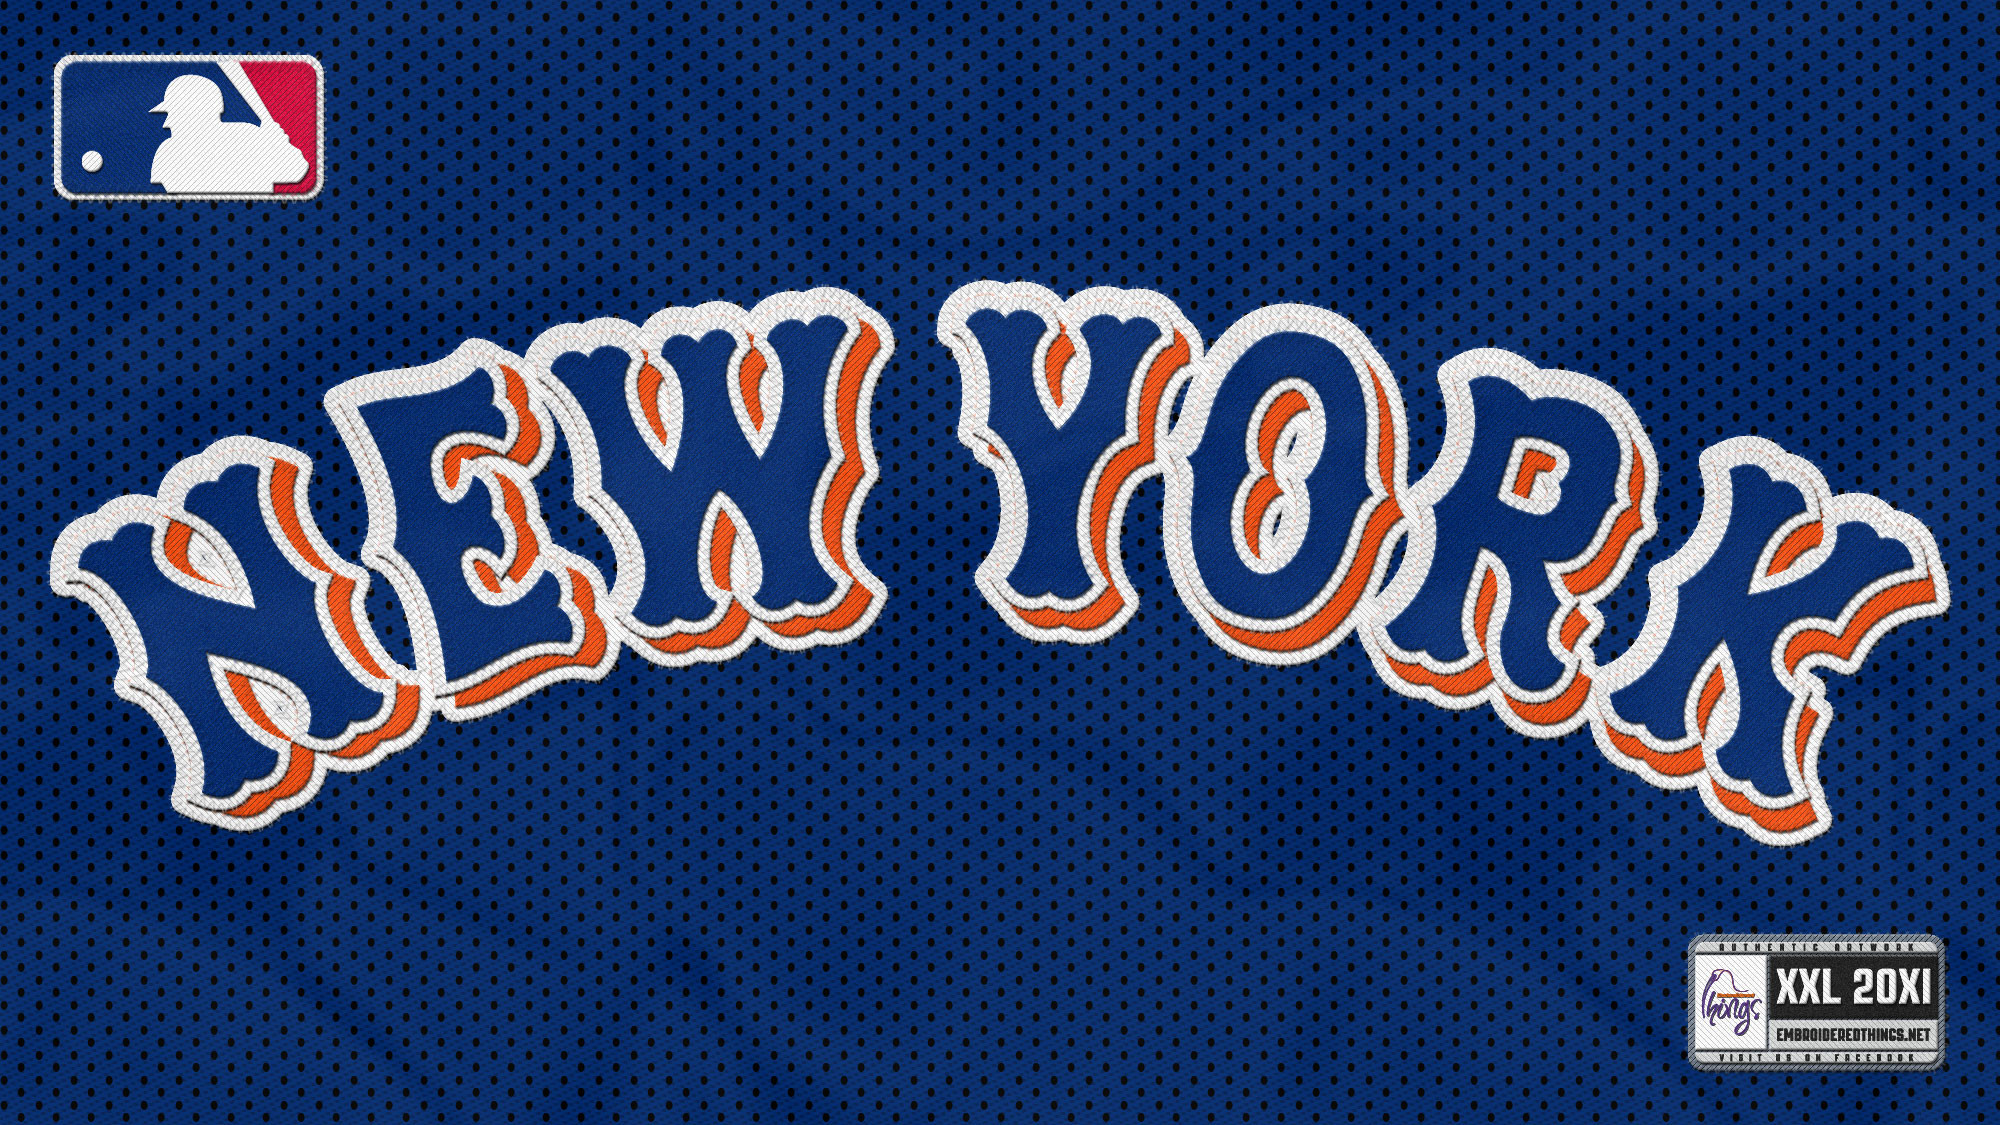 New York Mets Wallpapers